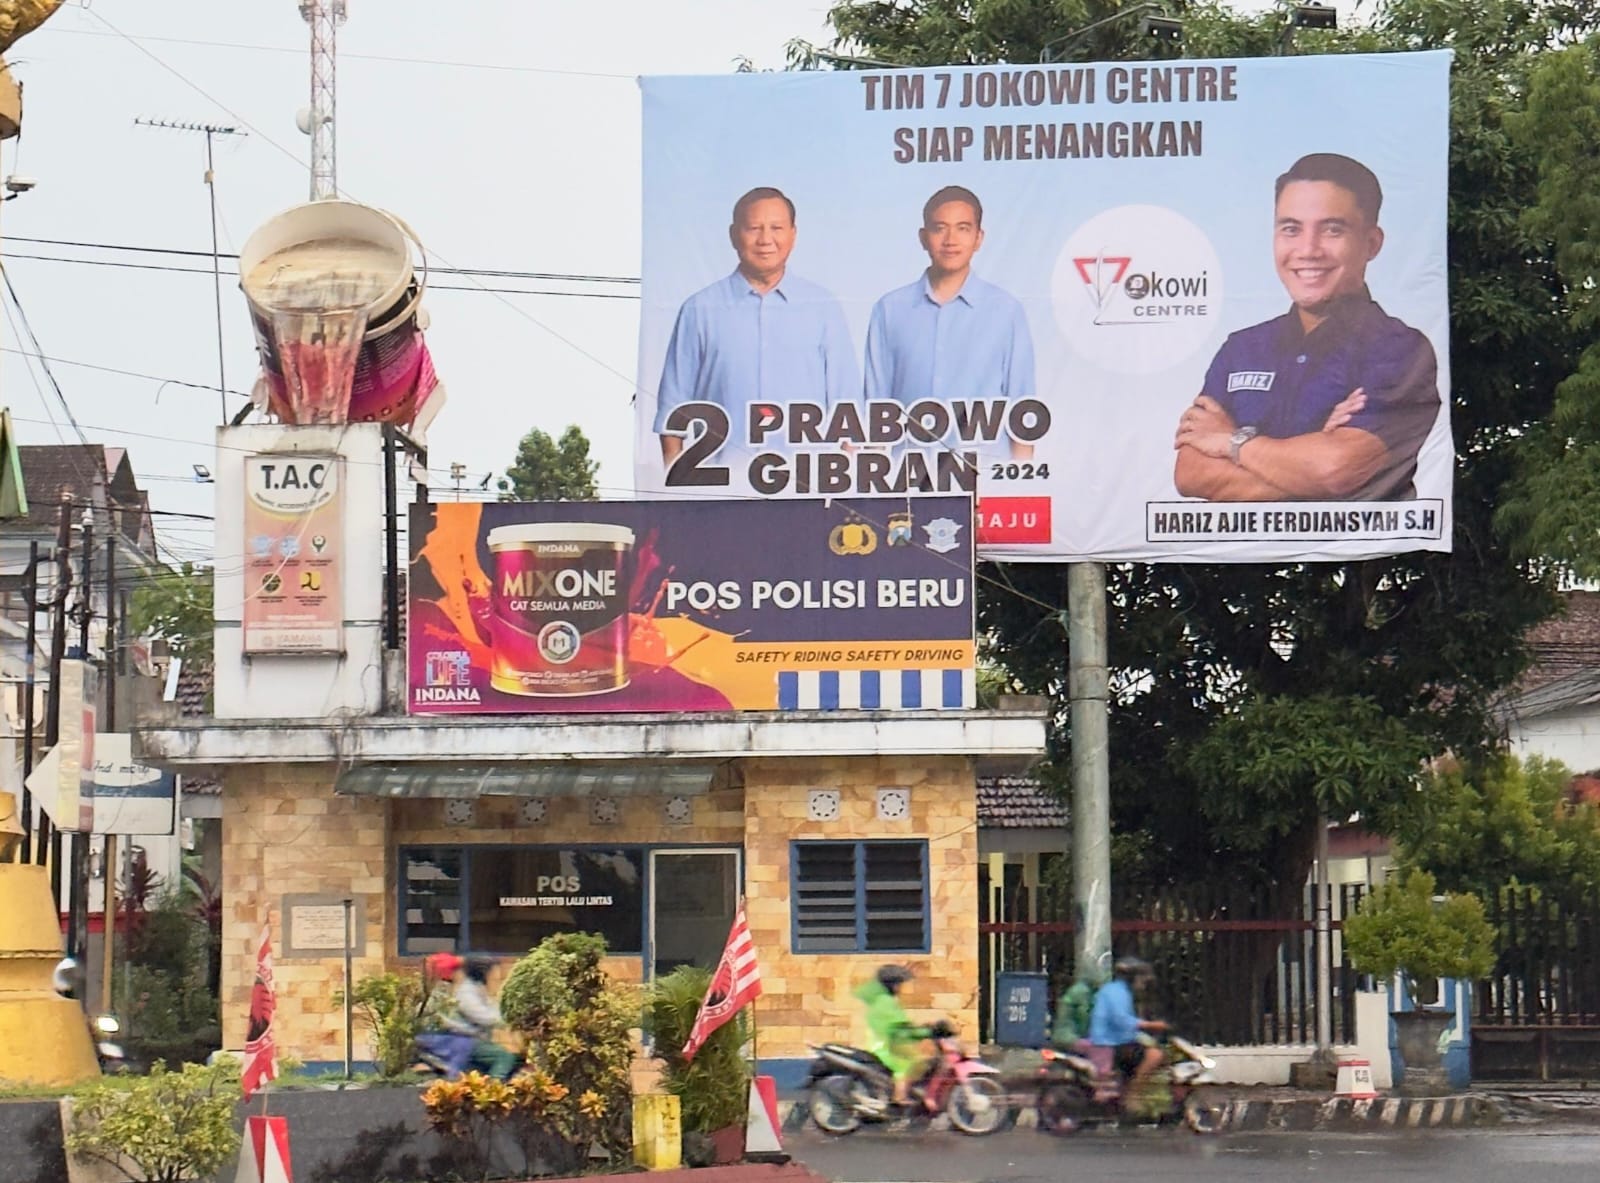 Posko Tim 7 Jokowi Centre Terbentuk, Optimis Prabowo-Gibran Menang Mutlak di Blitar